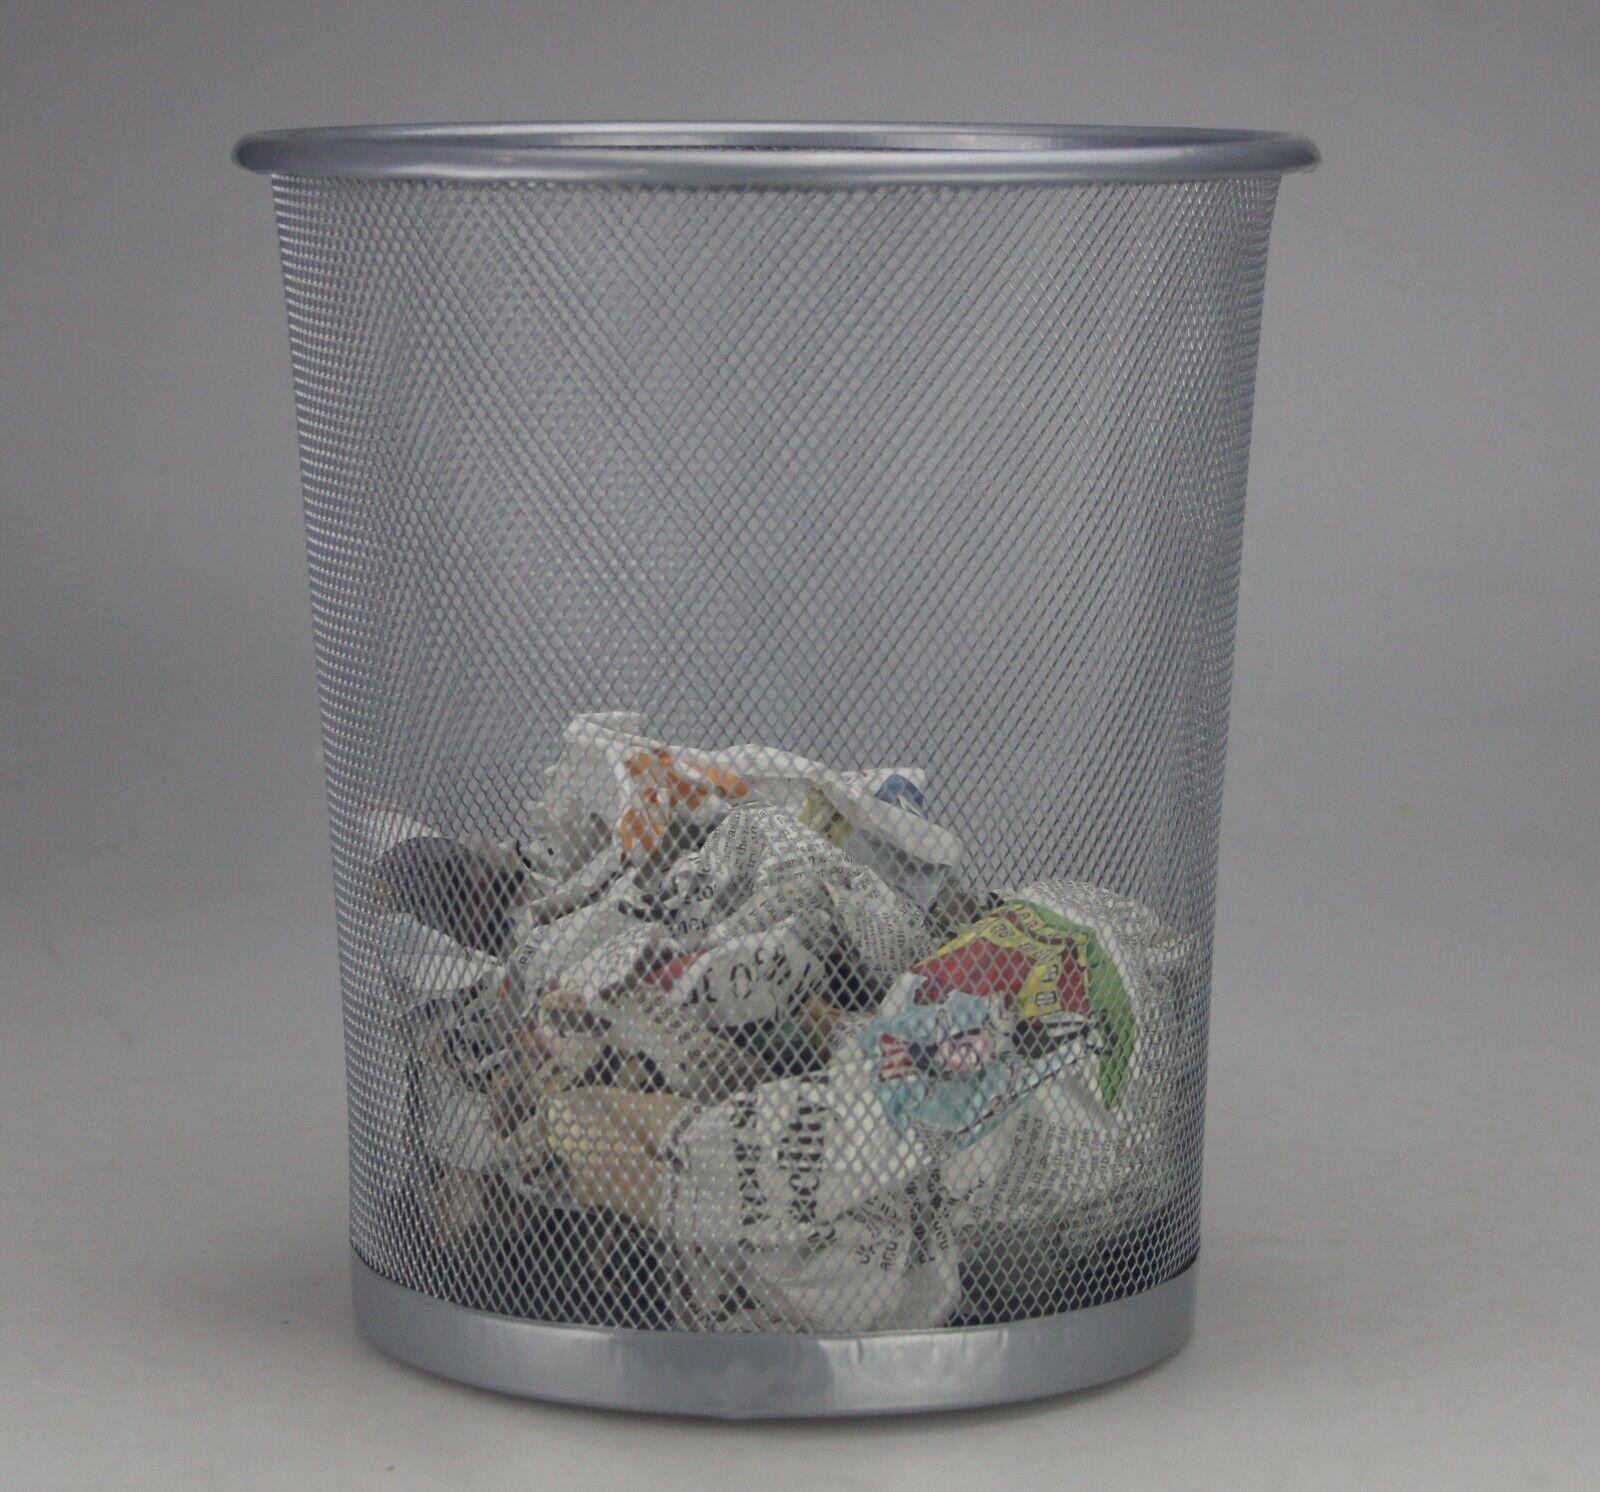 Metal Waste Paper Rubbish Bin for Office Bedroom Small Mesh Desk Litter 10L bin 